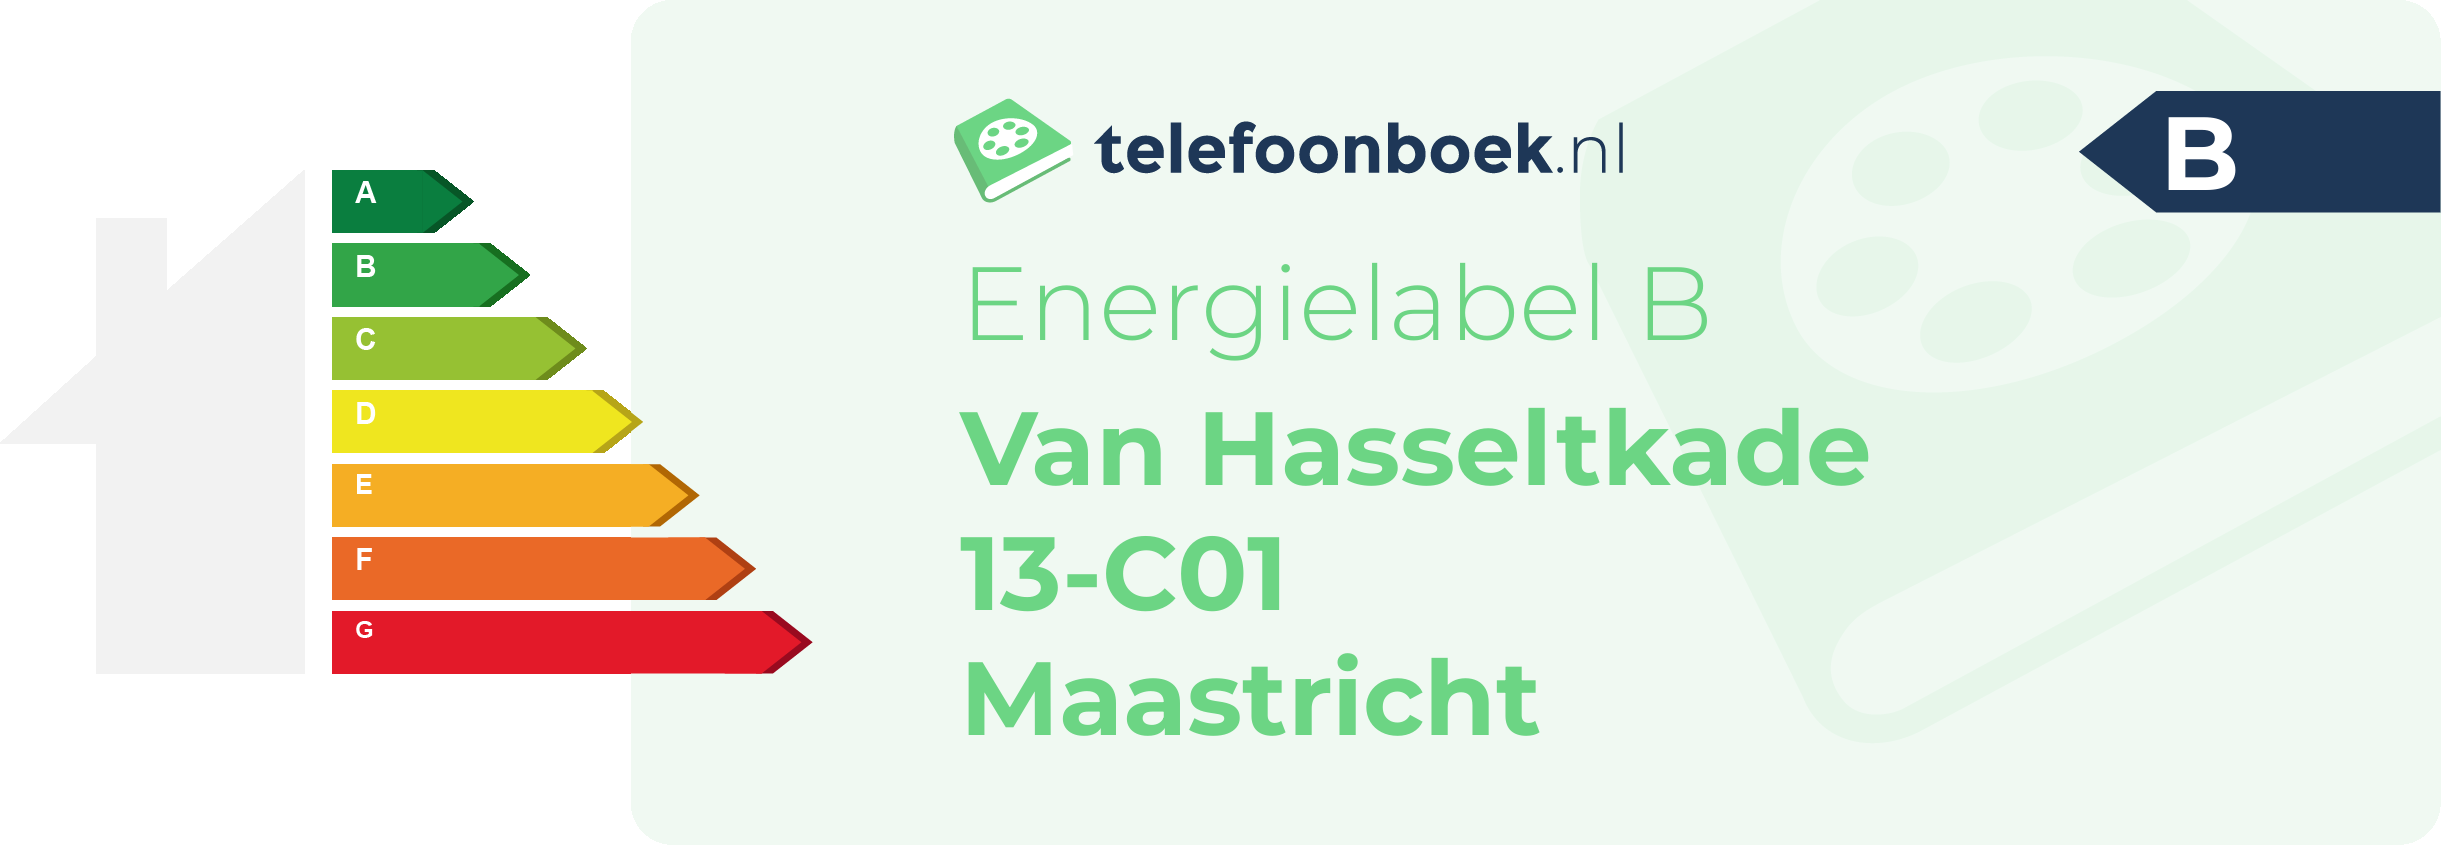 Energielabel Van Hasseltkade 13-C01 Maastricht